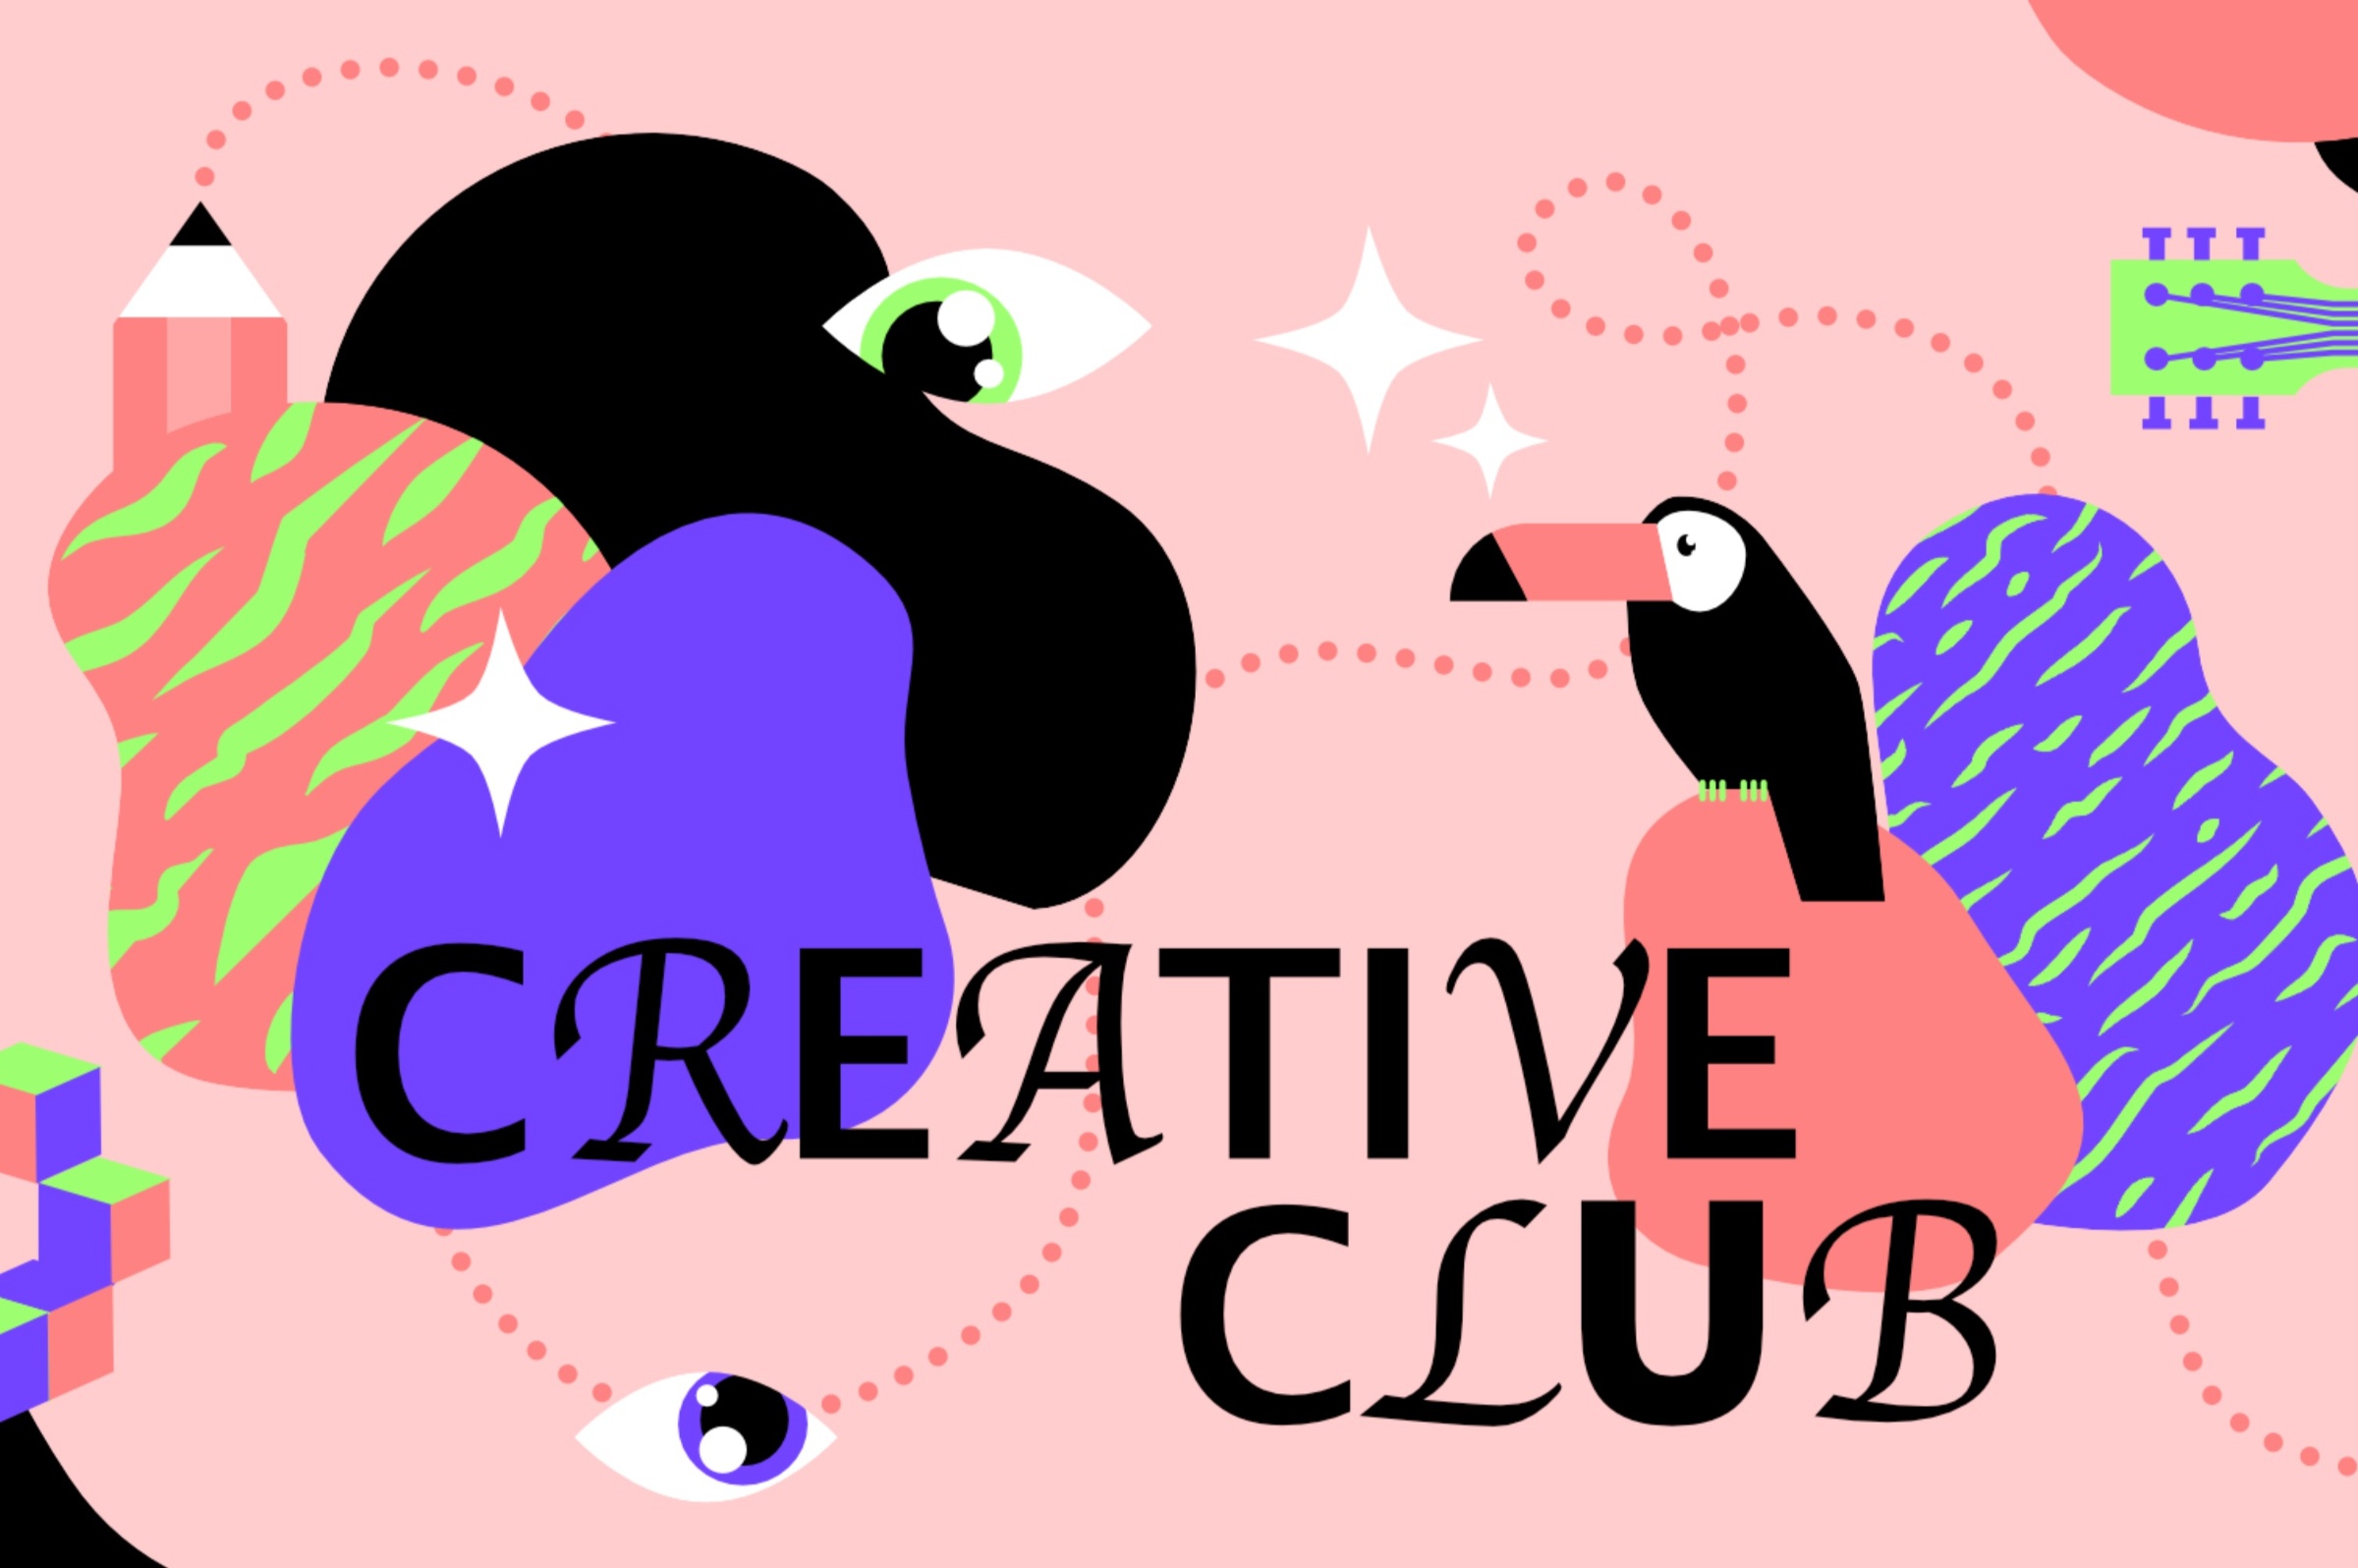 Helsinki Creative Club